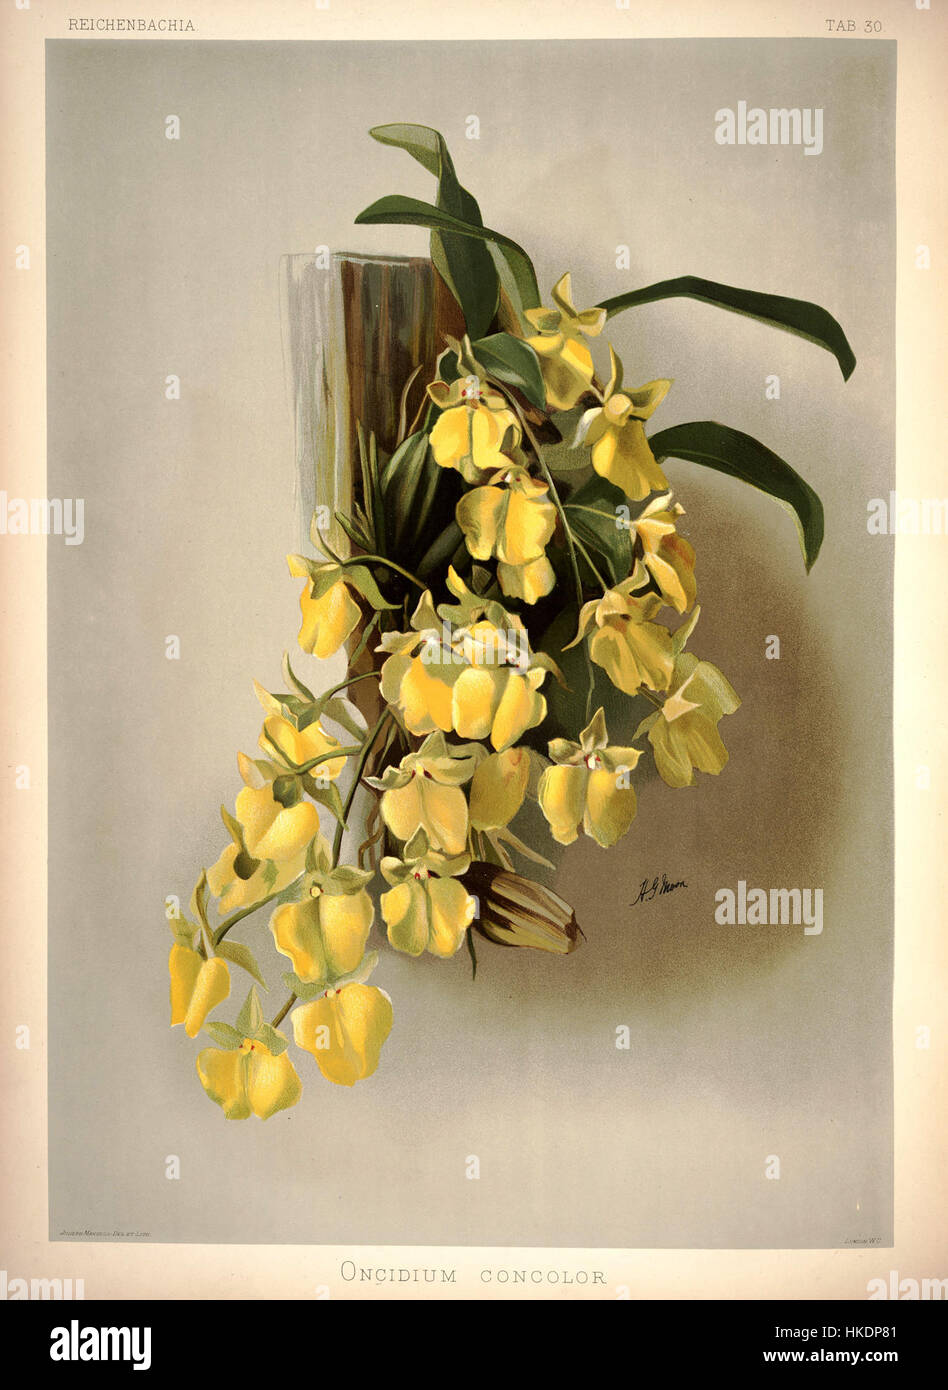 Frederick Sander   Reichenbachia I plate 30 (1888)   Oncidium concolor Stock Photo